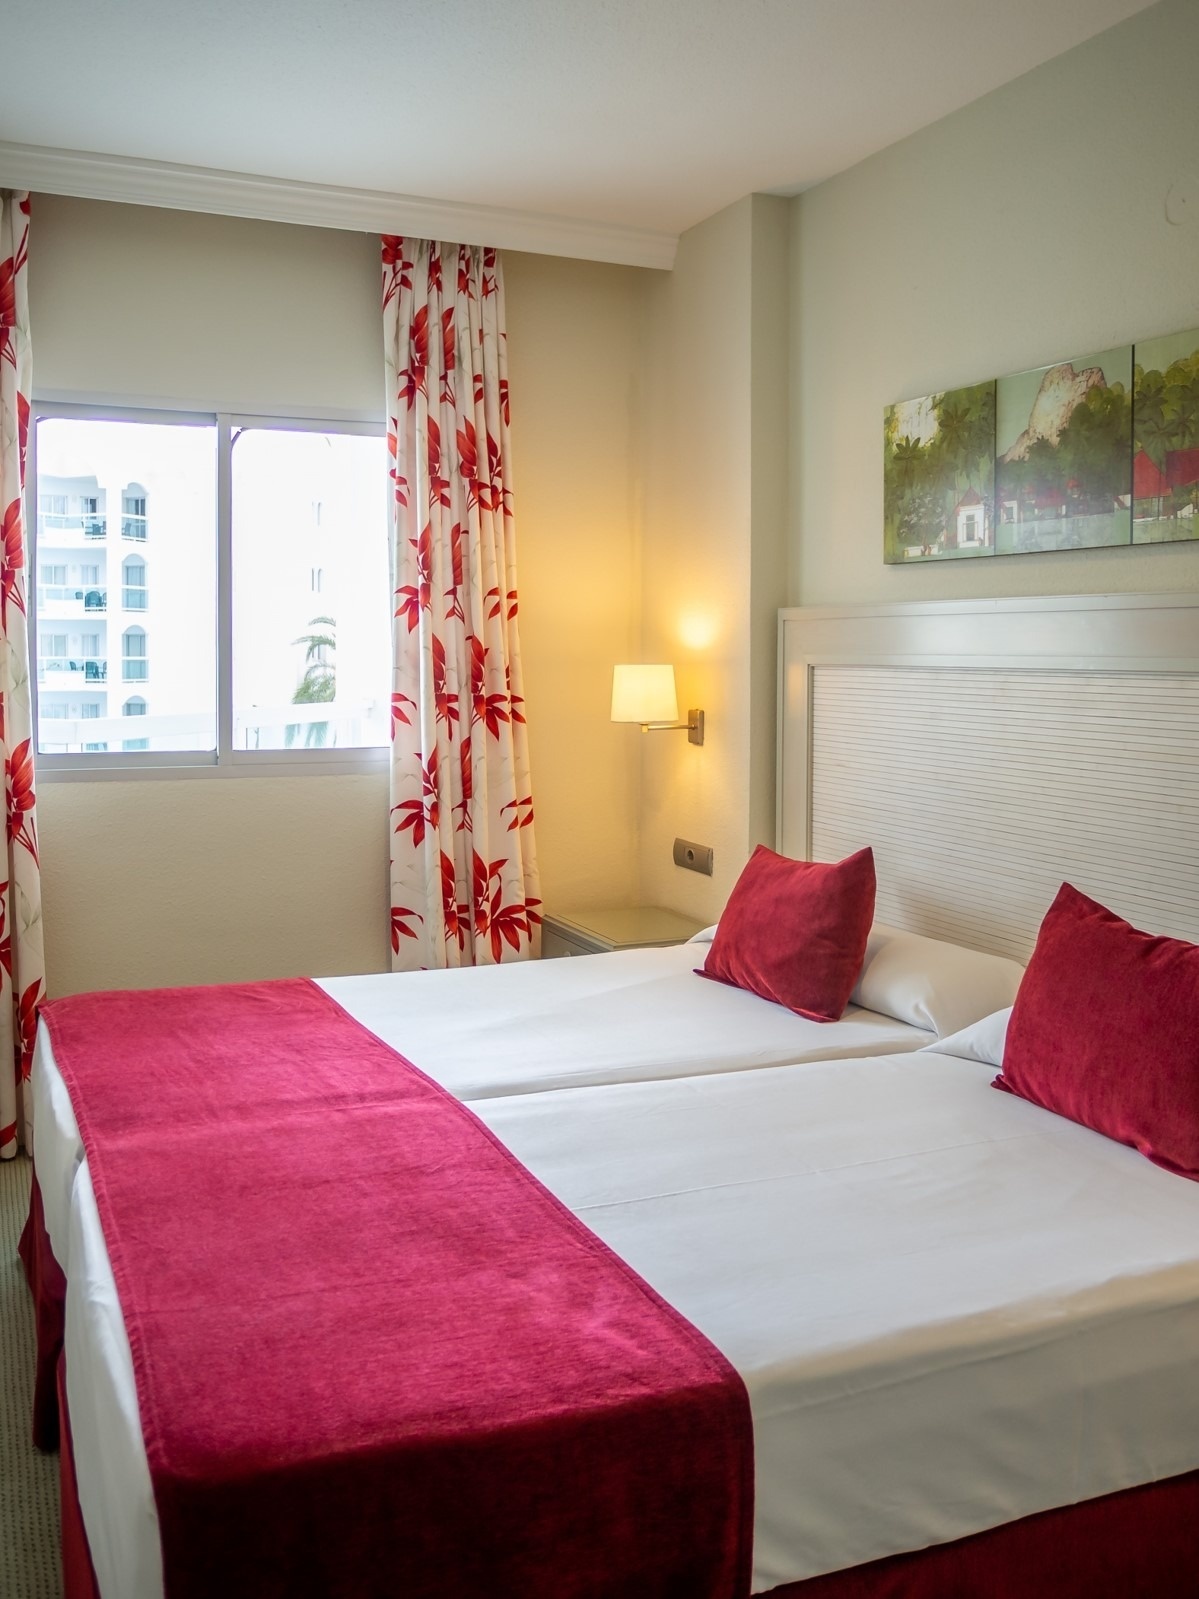 Apartamento con cama doble del Hotel Ona Marinas de Nerja